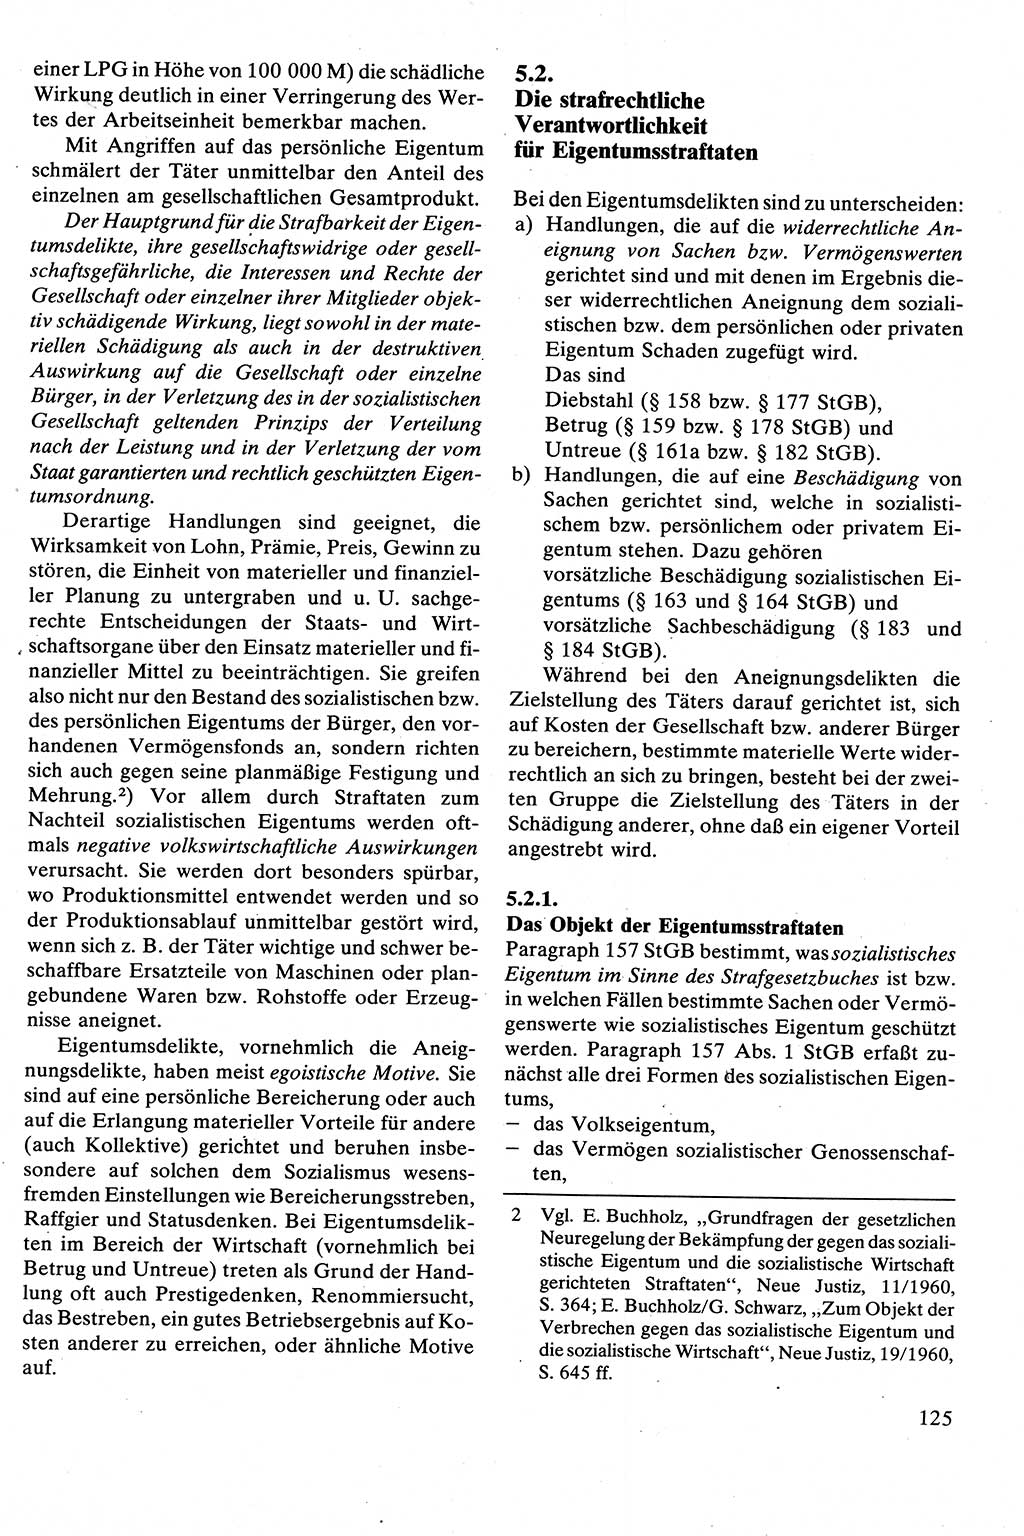 Strafrecht [Deutsche Demokratische Republik (DDR)], Besonderer Teil, Lehrbuch 1981, Seite 125 (Strafr. DDR BT Lb. 1981, S. 125)